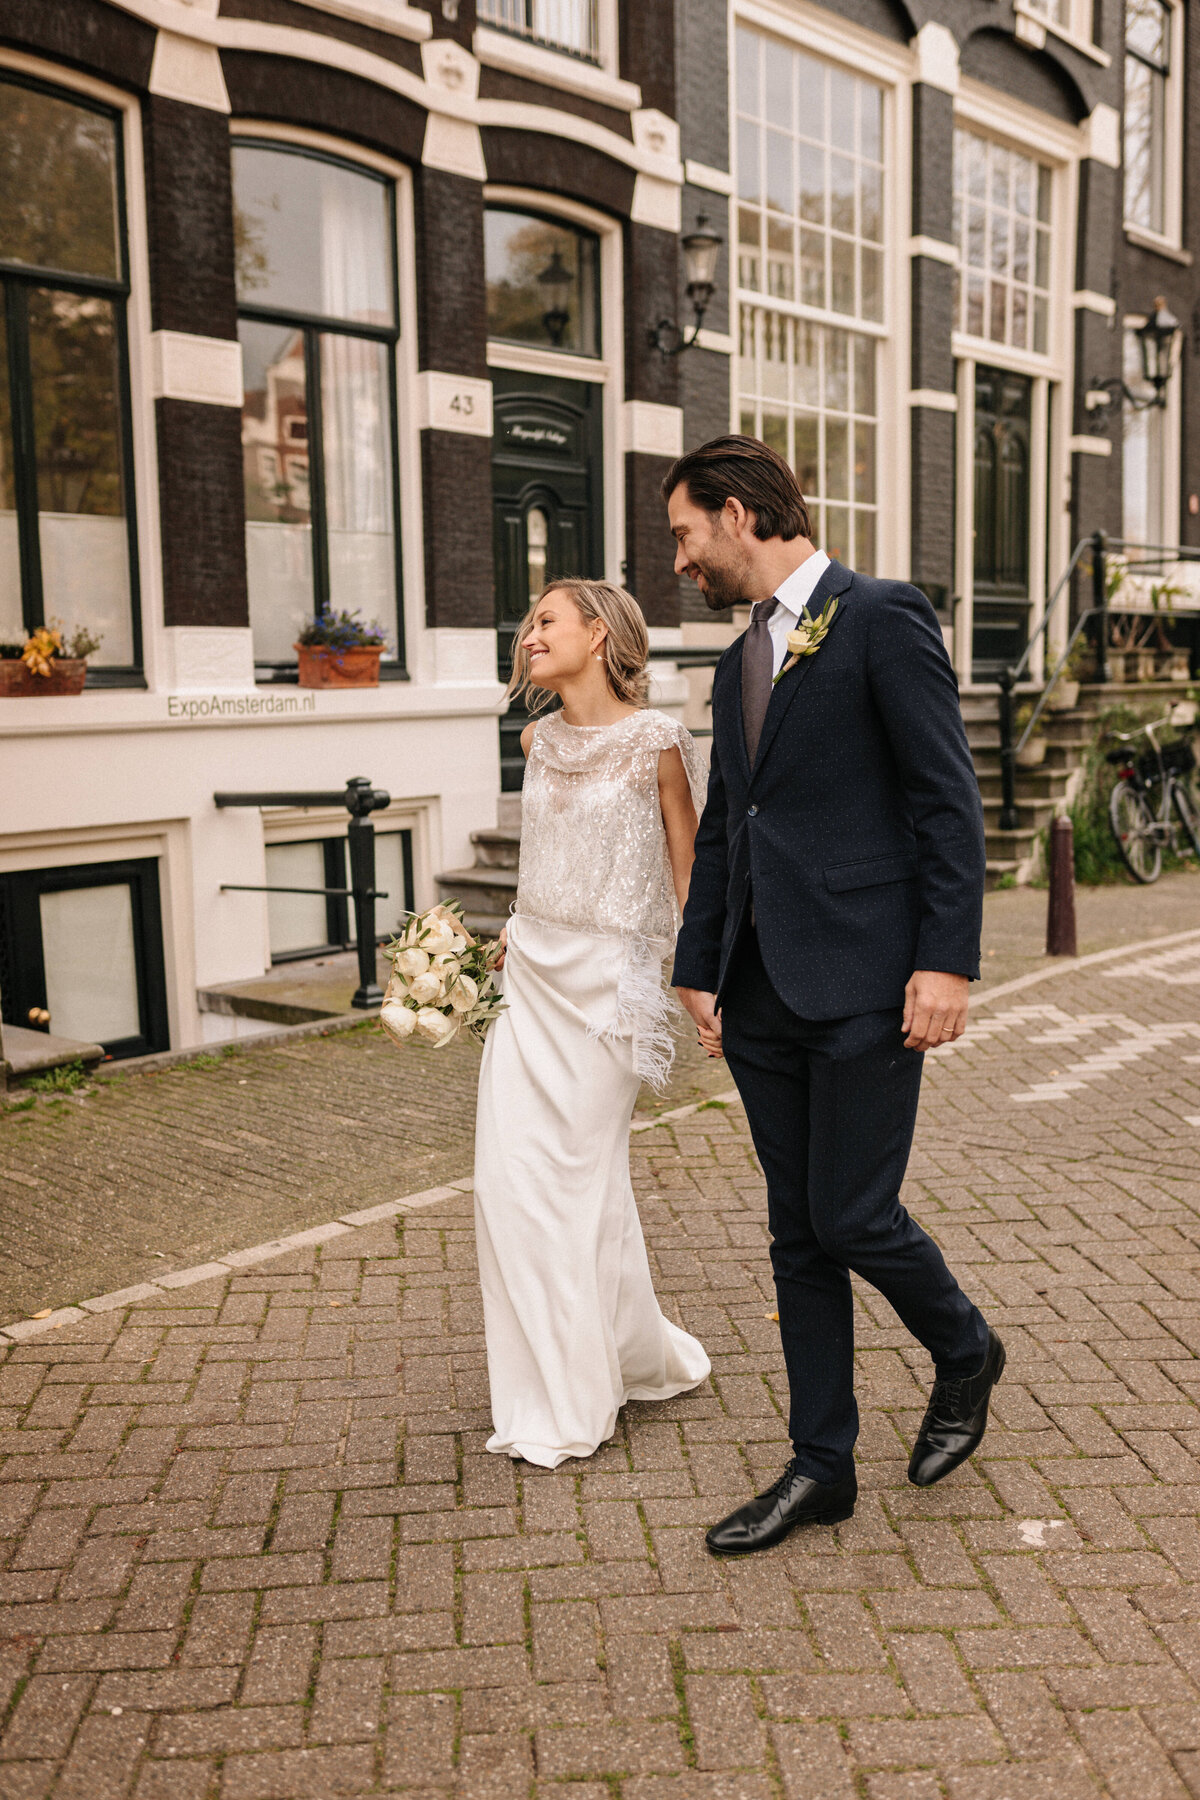 Brautpaar läuft auf Straße in Amsterdam